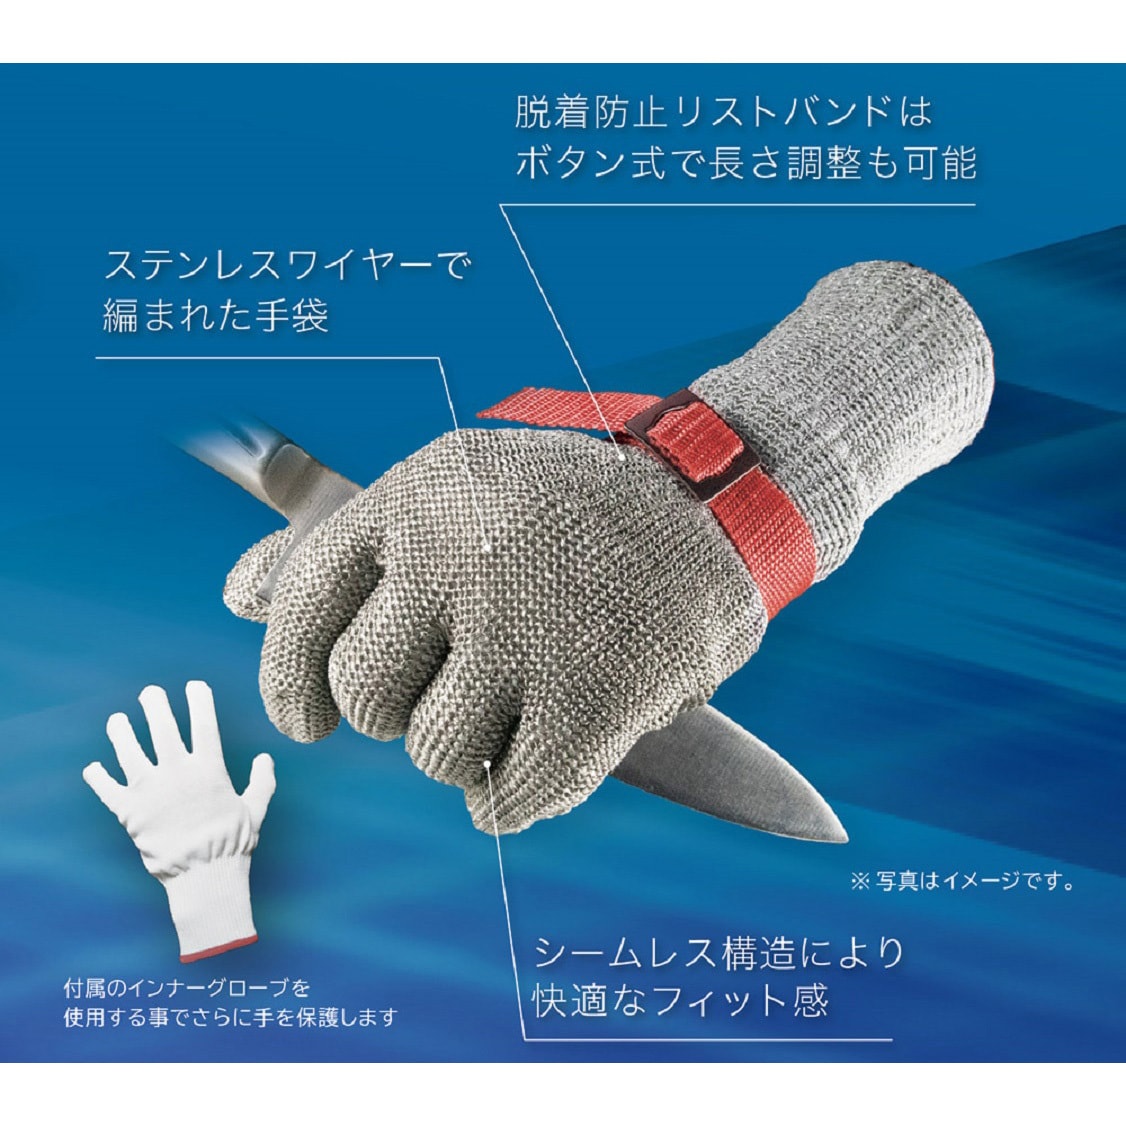 高級ブランド ニロフレックス 2000 ショートカフ付 メッシュ手袋 5本指 片手 オールステンレス C-M5-NV 